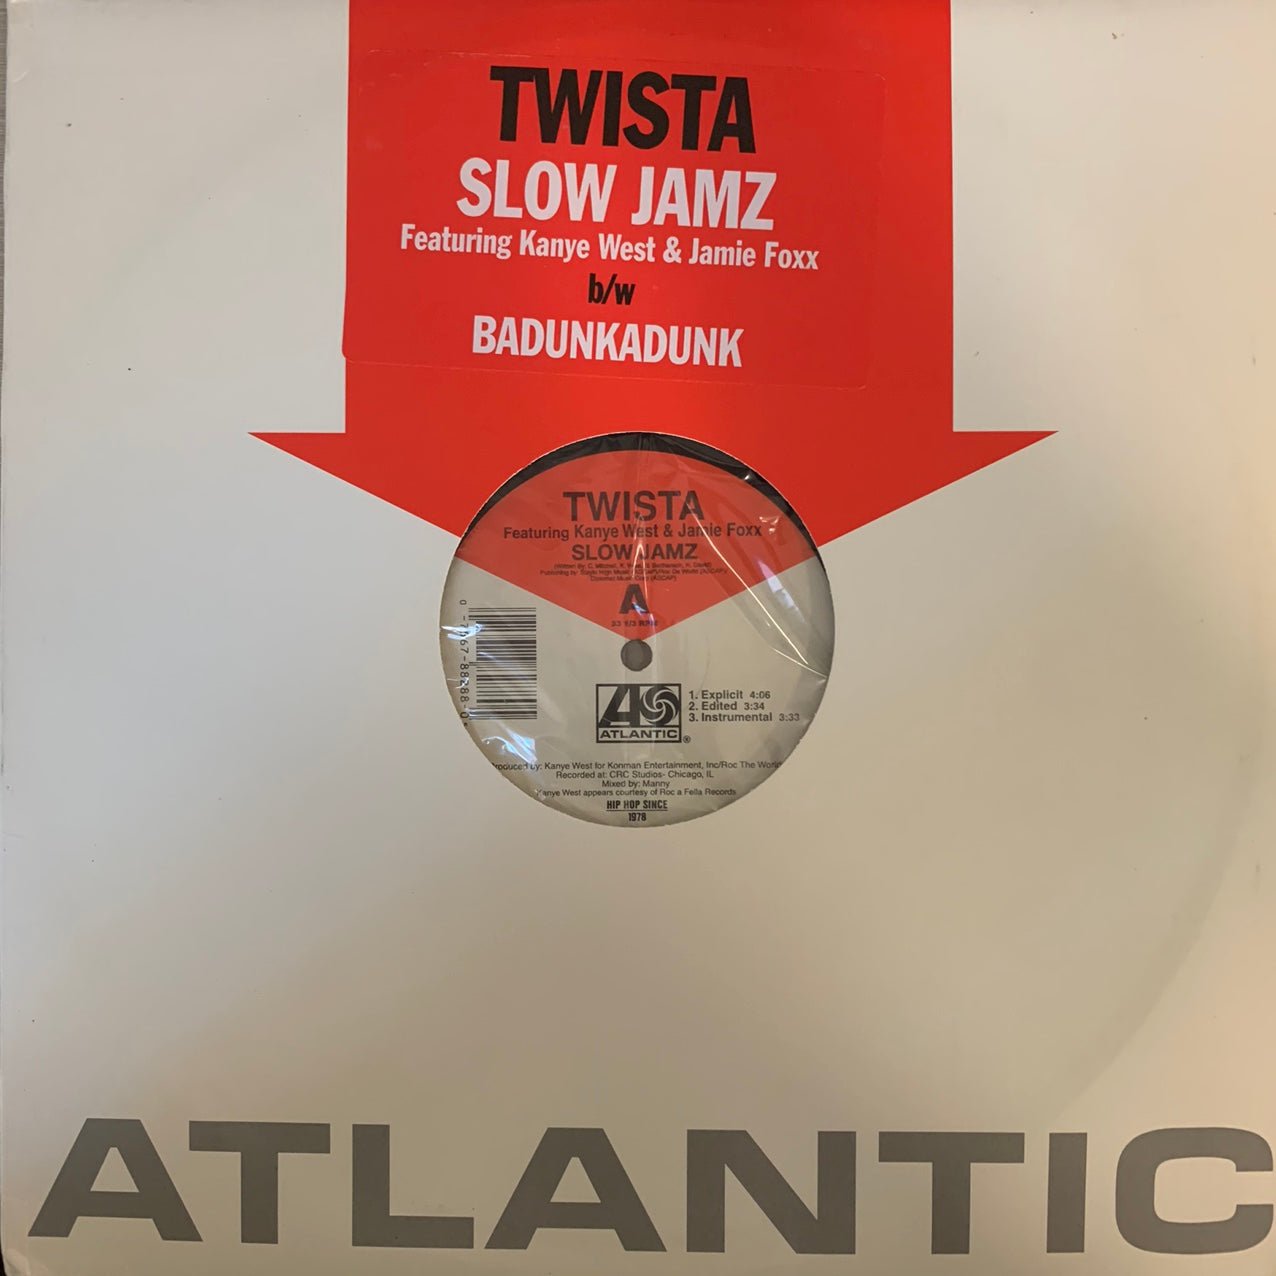 Twista Feat Kanye West “Slow Jamz” 6 Version 12inch Vinyl